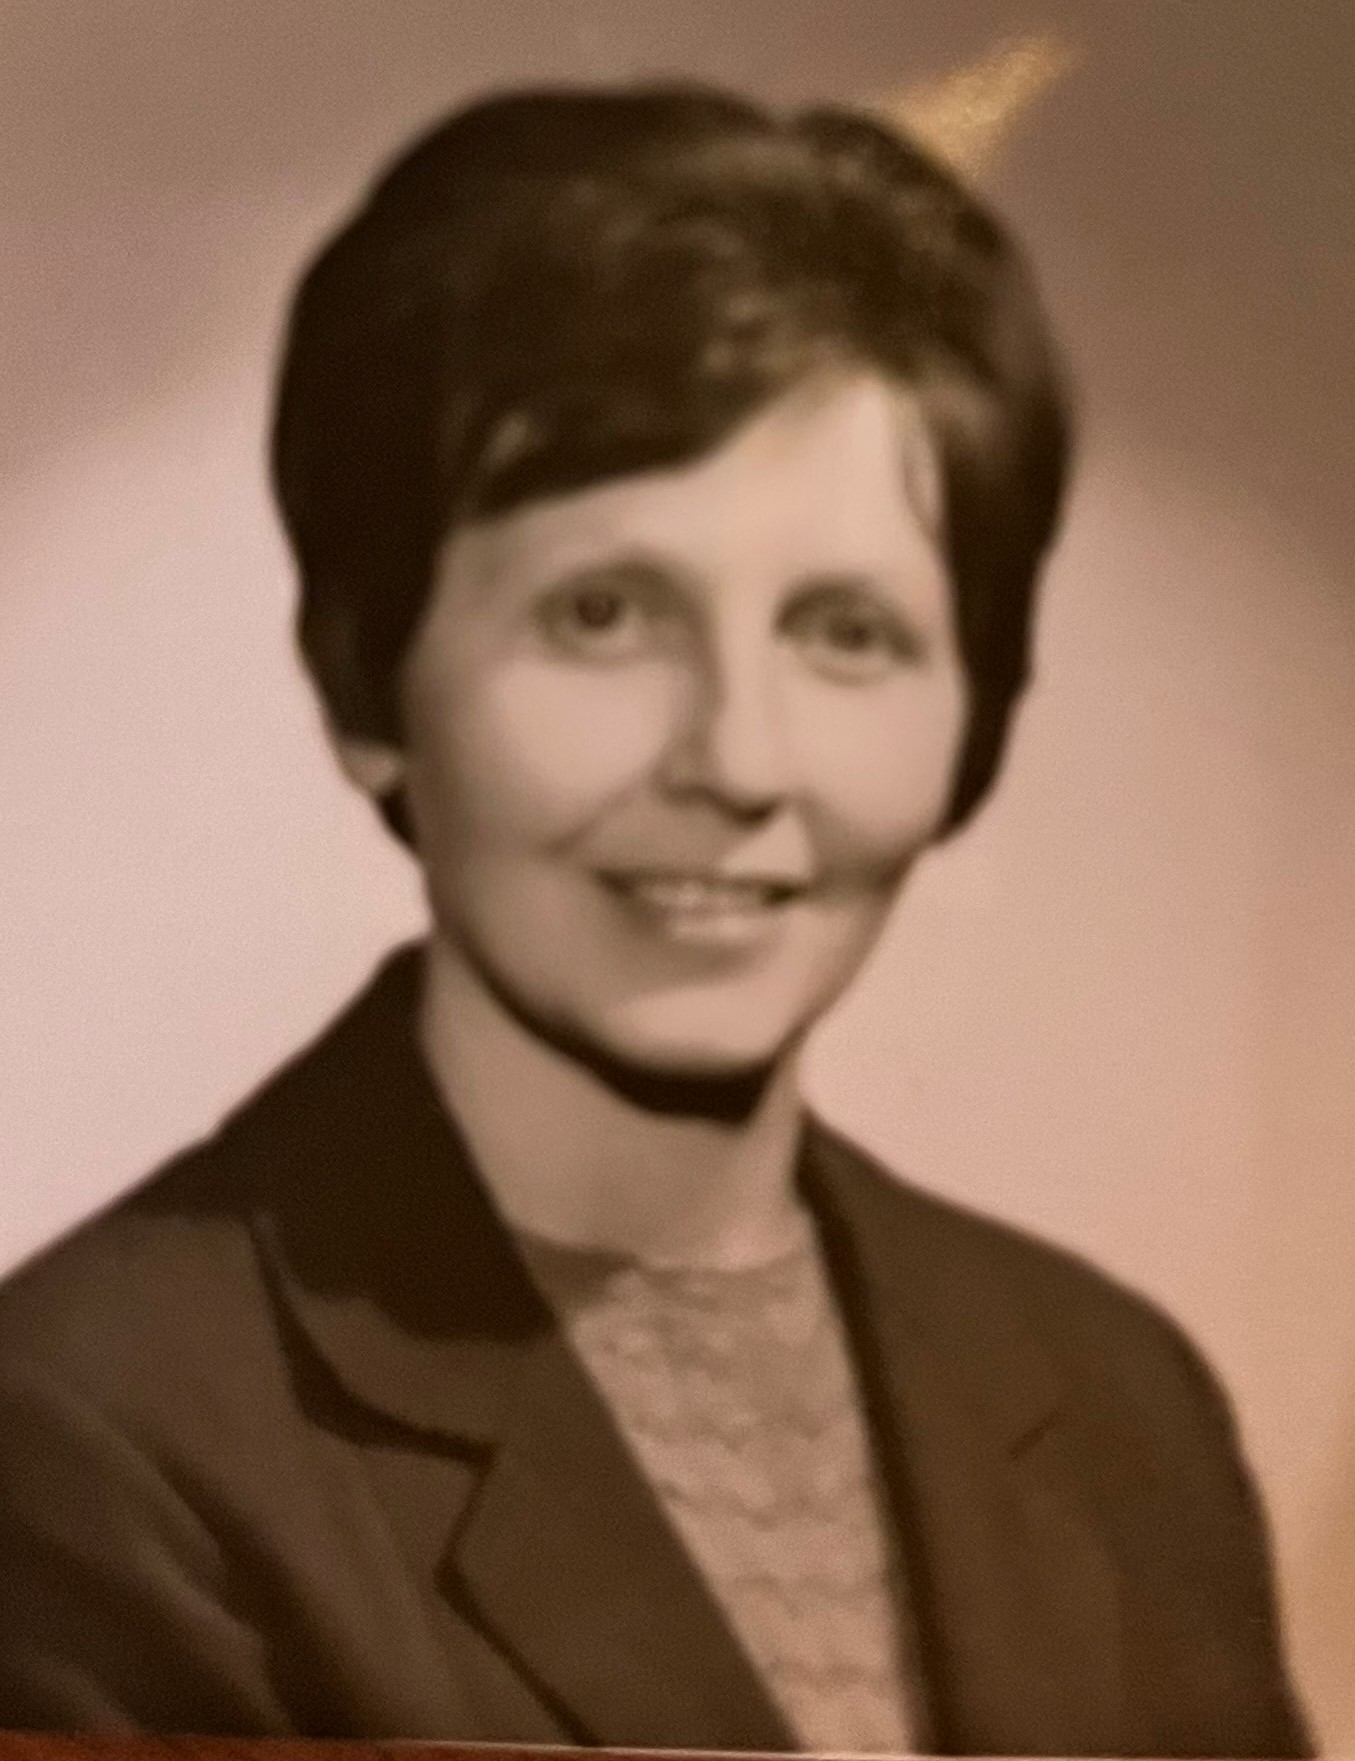 Nina Burláková in the end of 1970s